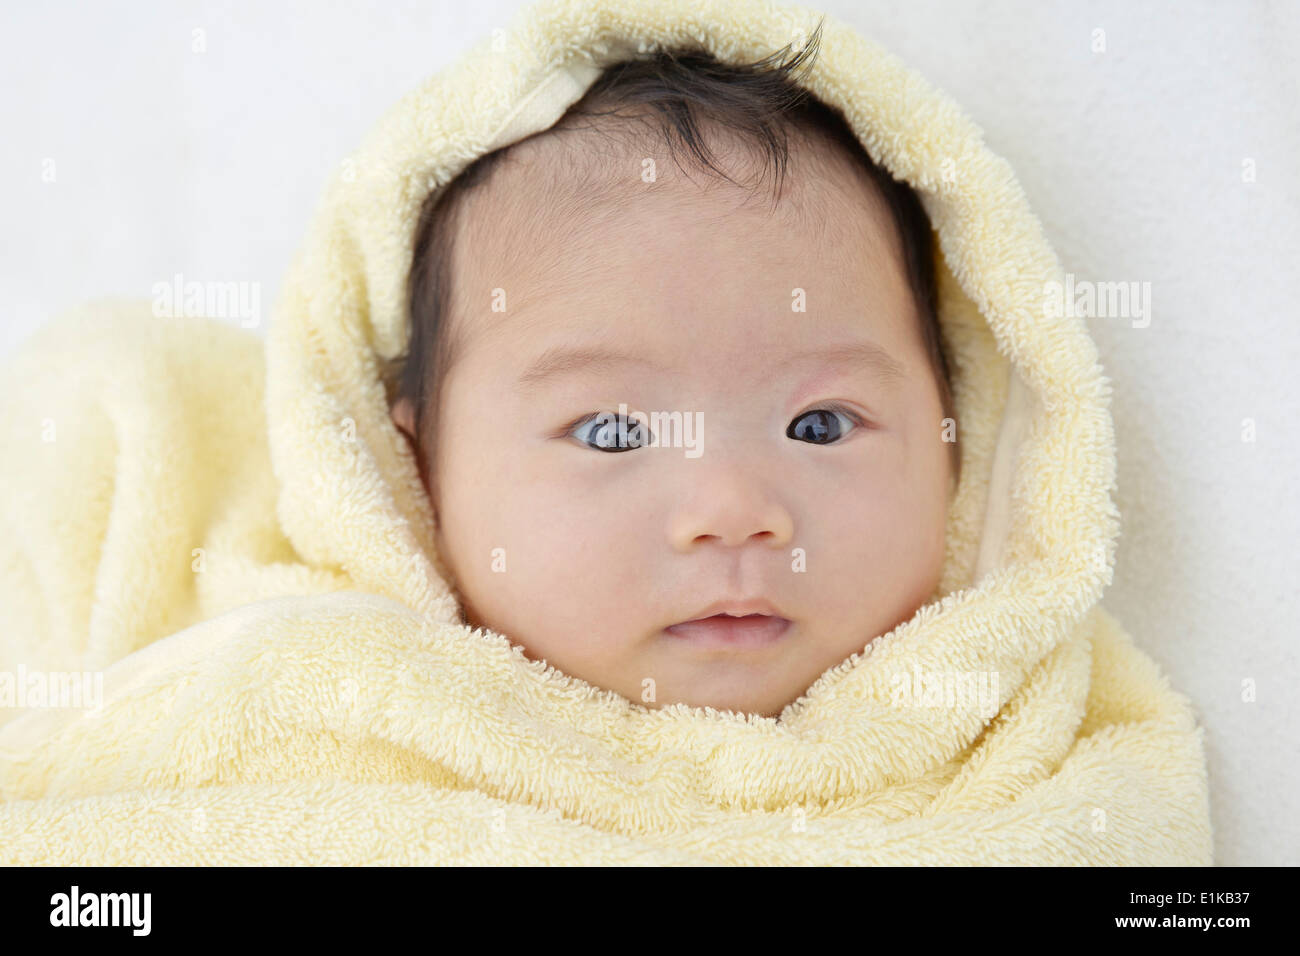 Modello rilasciato Baby girl avvolto in un asciugamano ritratto. Foto Stock